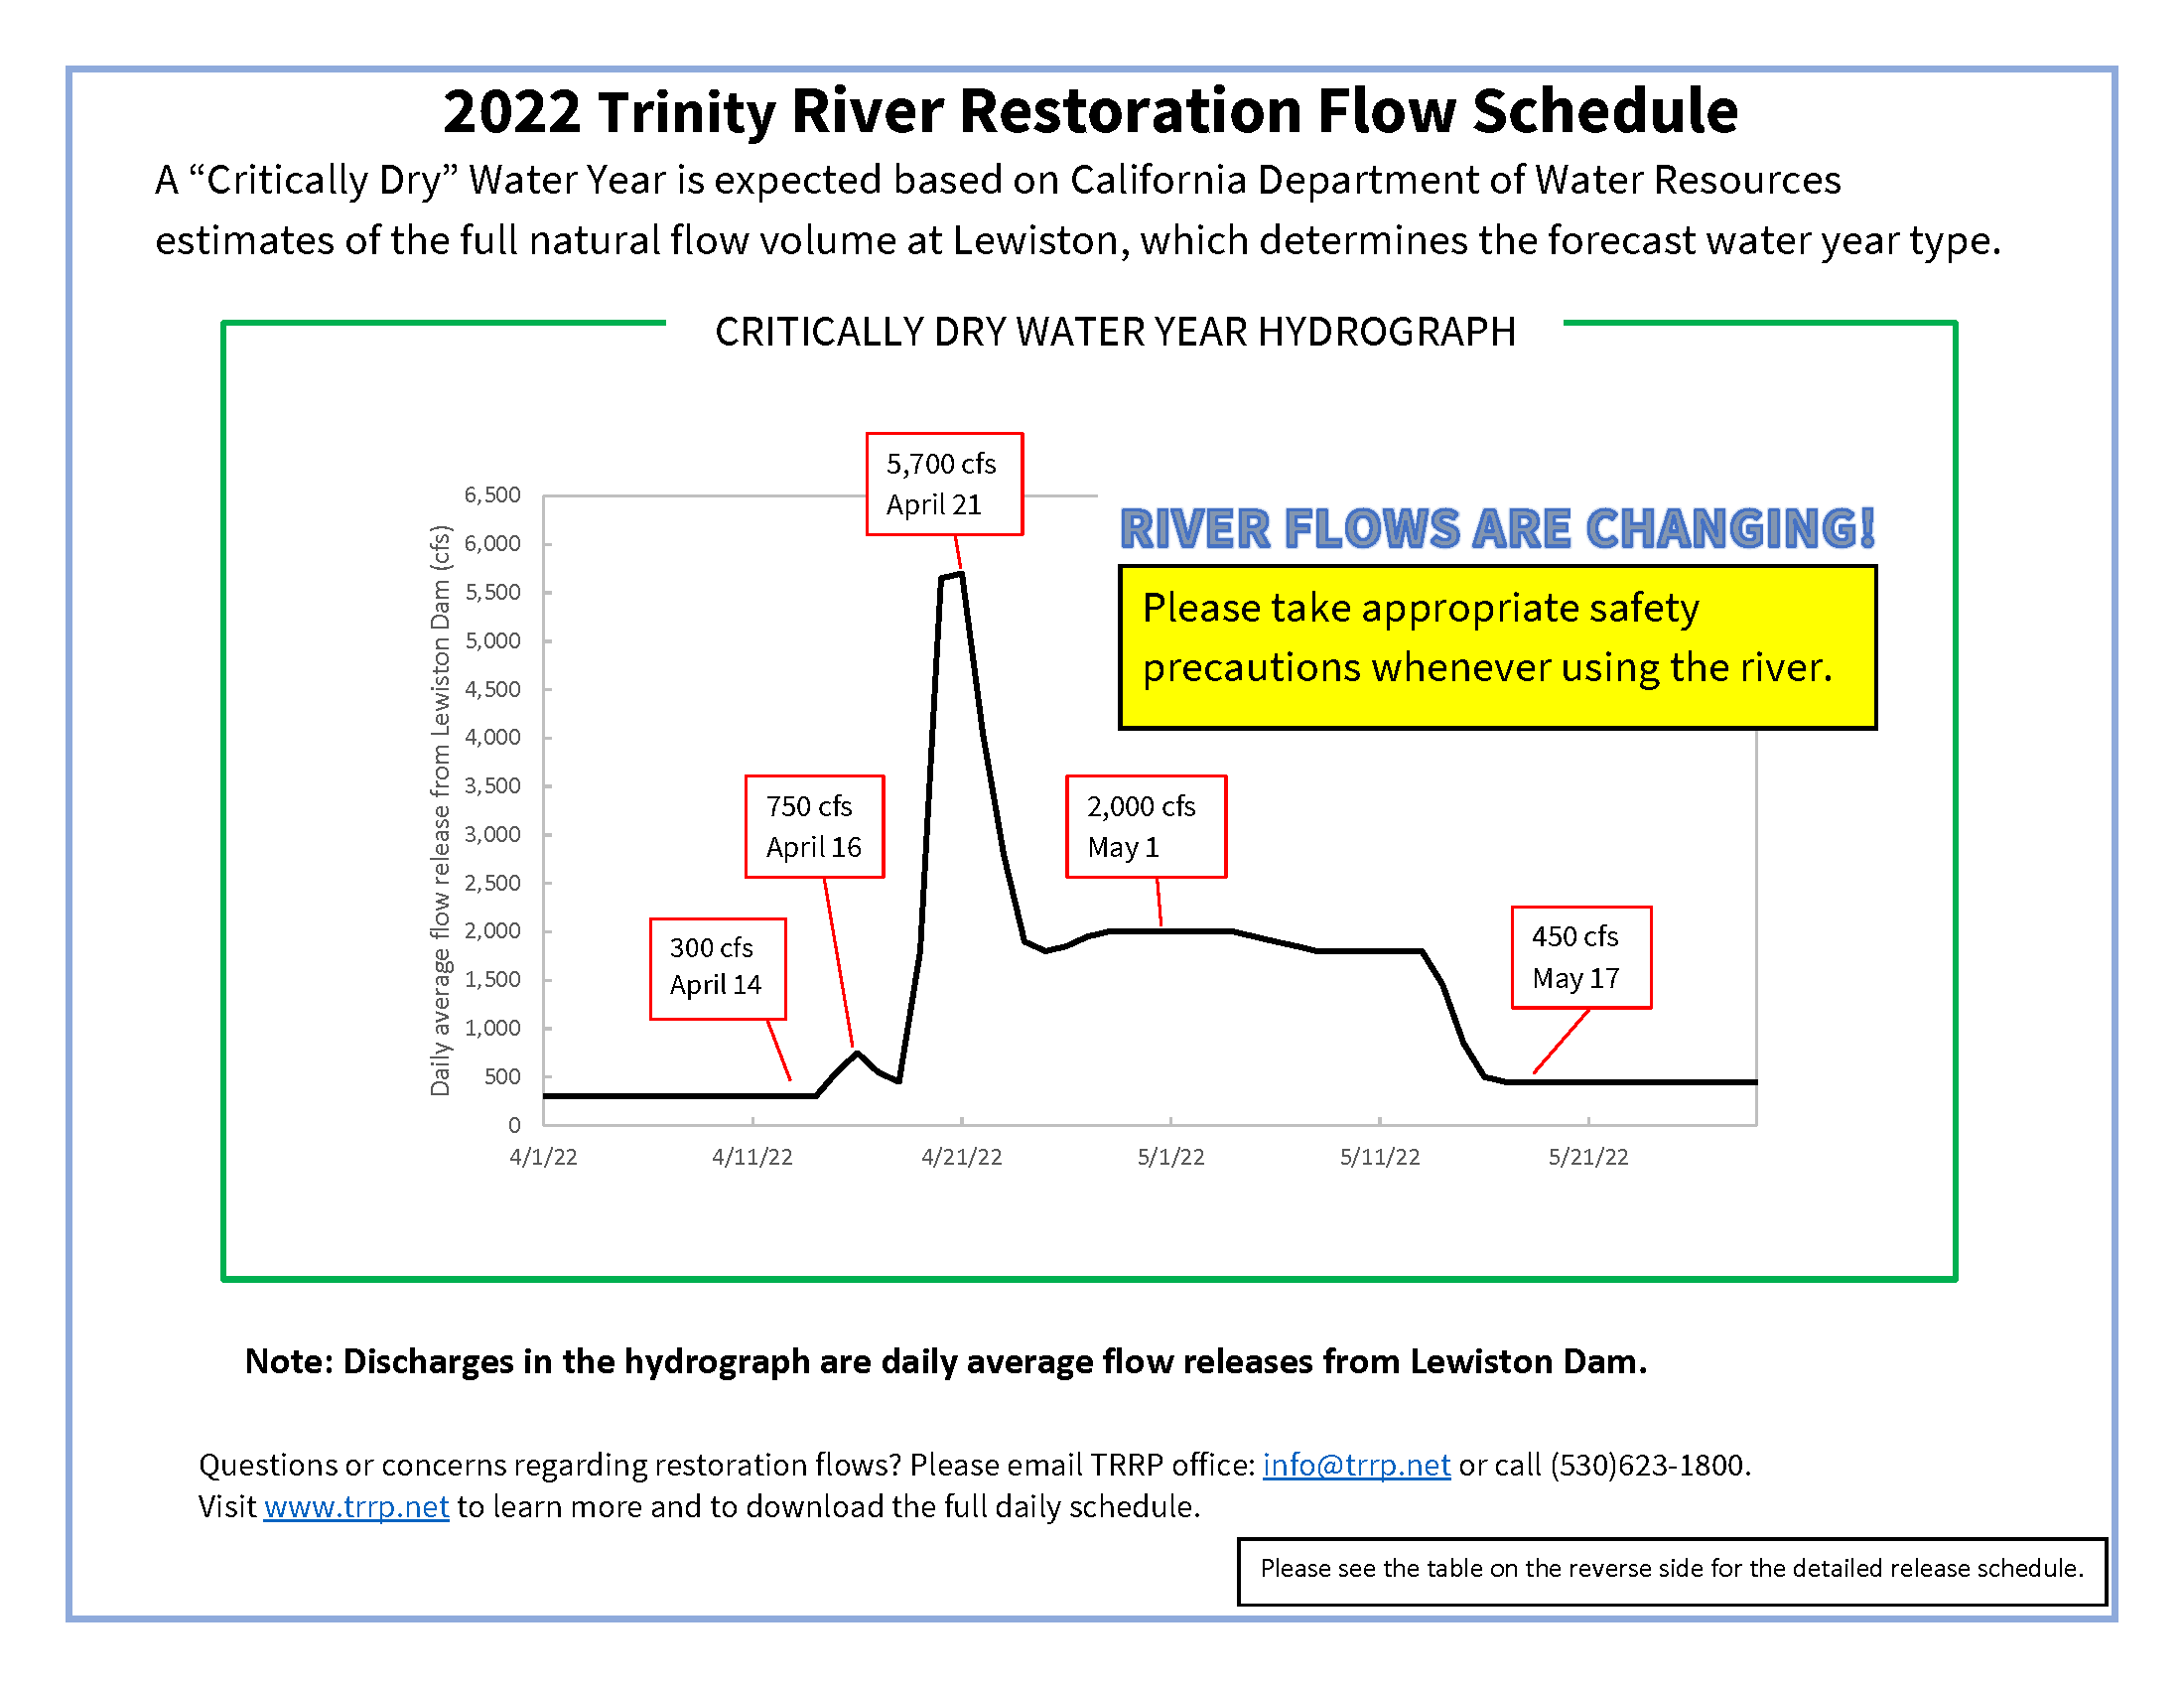 Water Year 2022 restoration flow schedule flyer, graph.